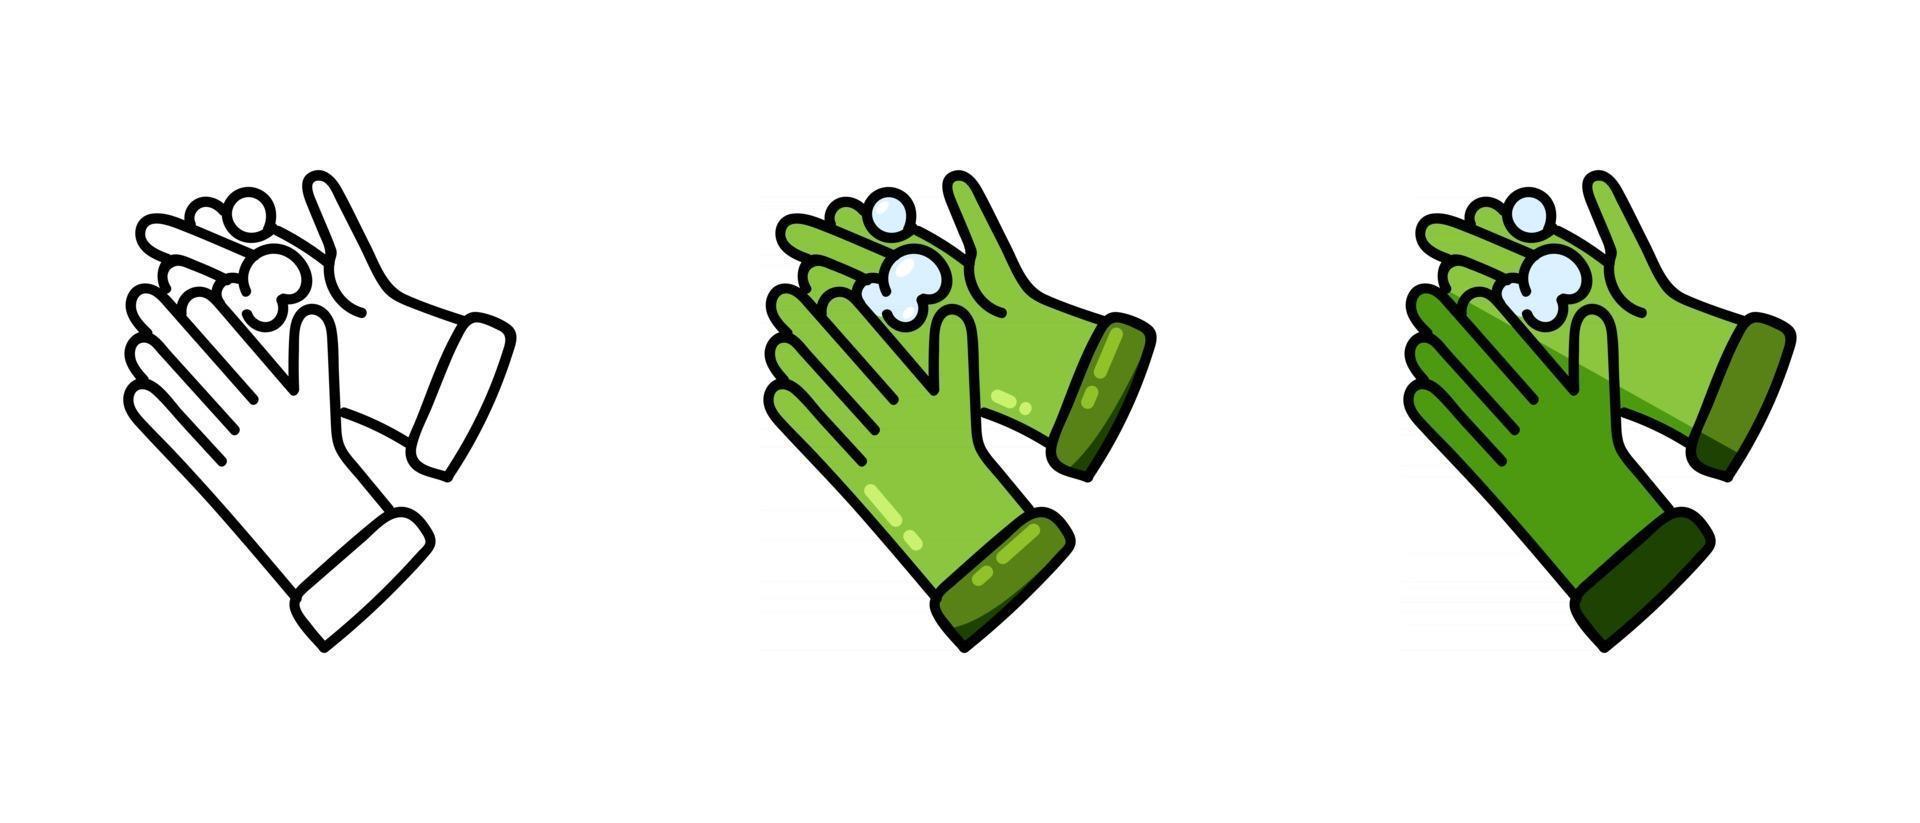 kontur och gröna handskesymboler i skum vektor